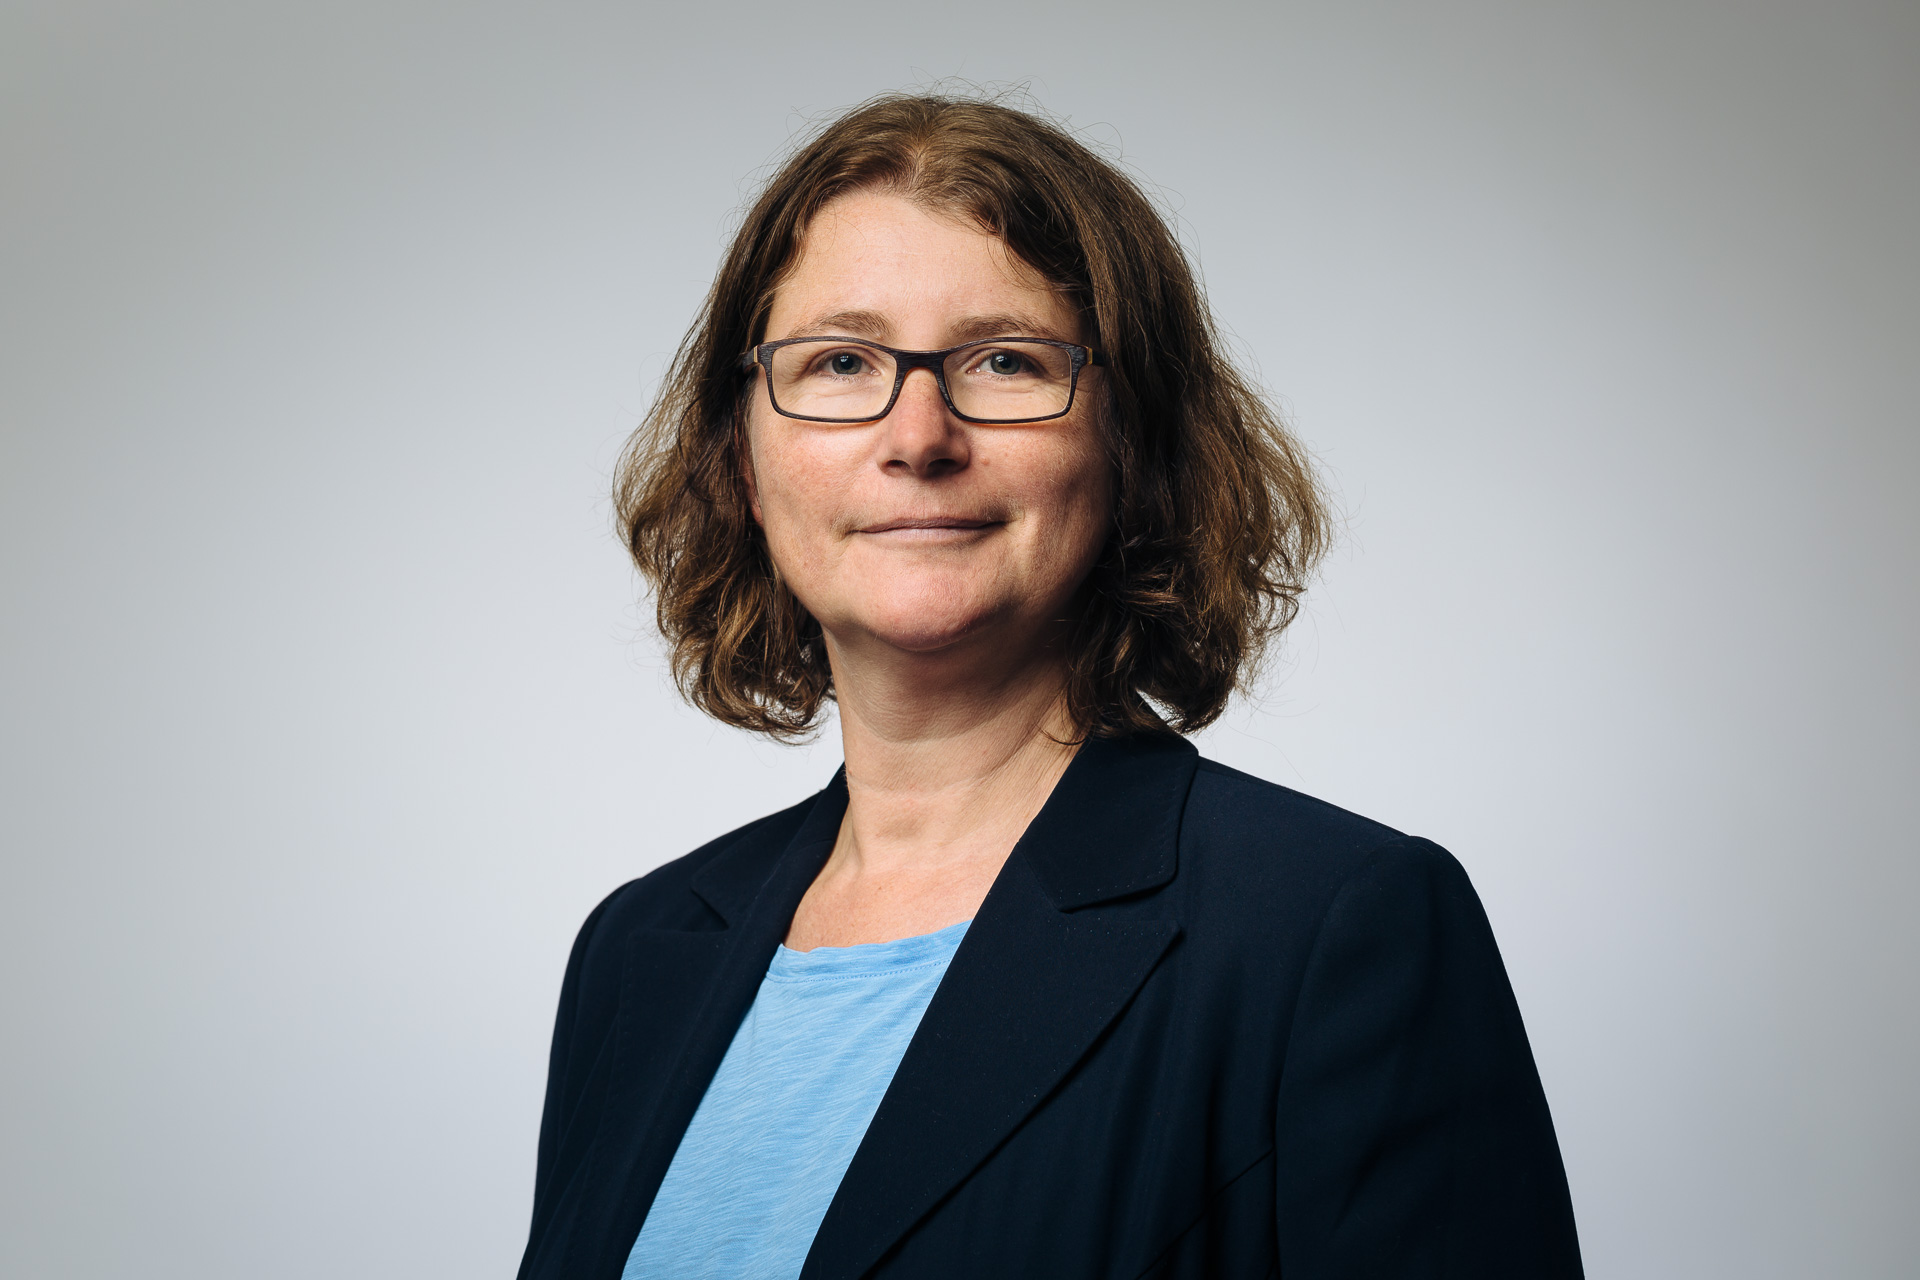 Dr. Susanne Fuß